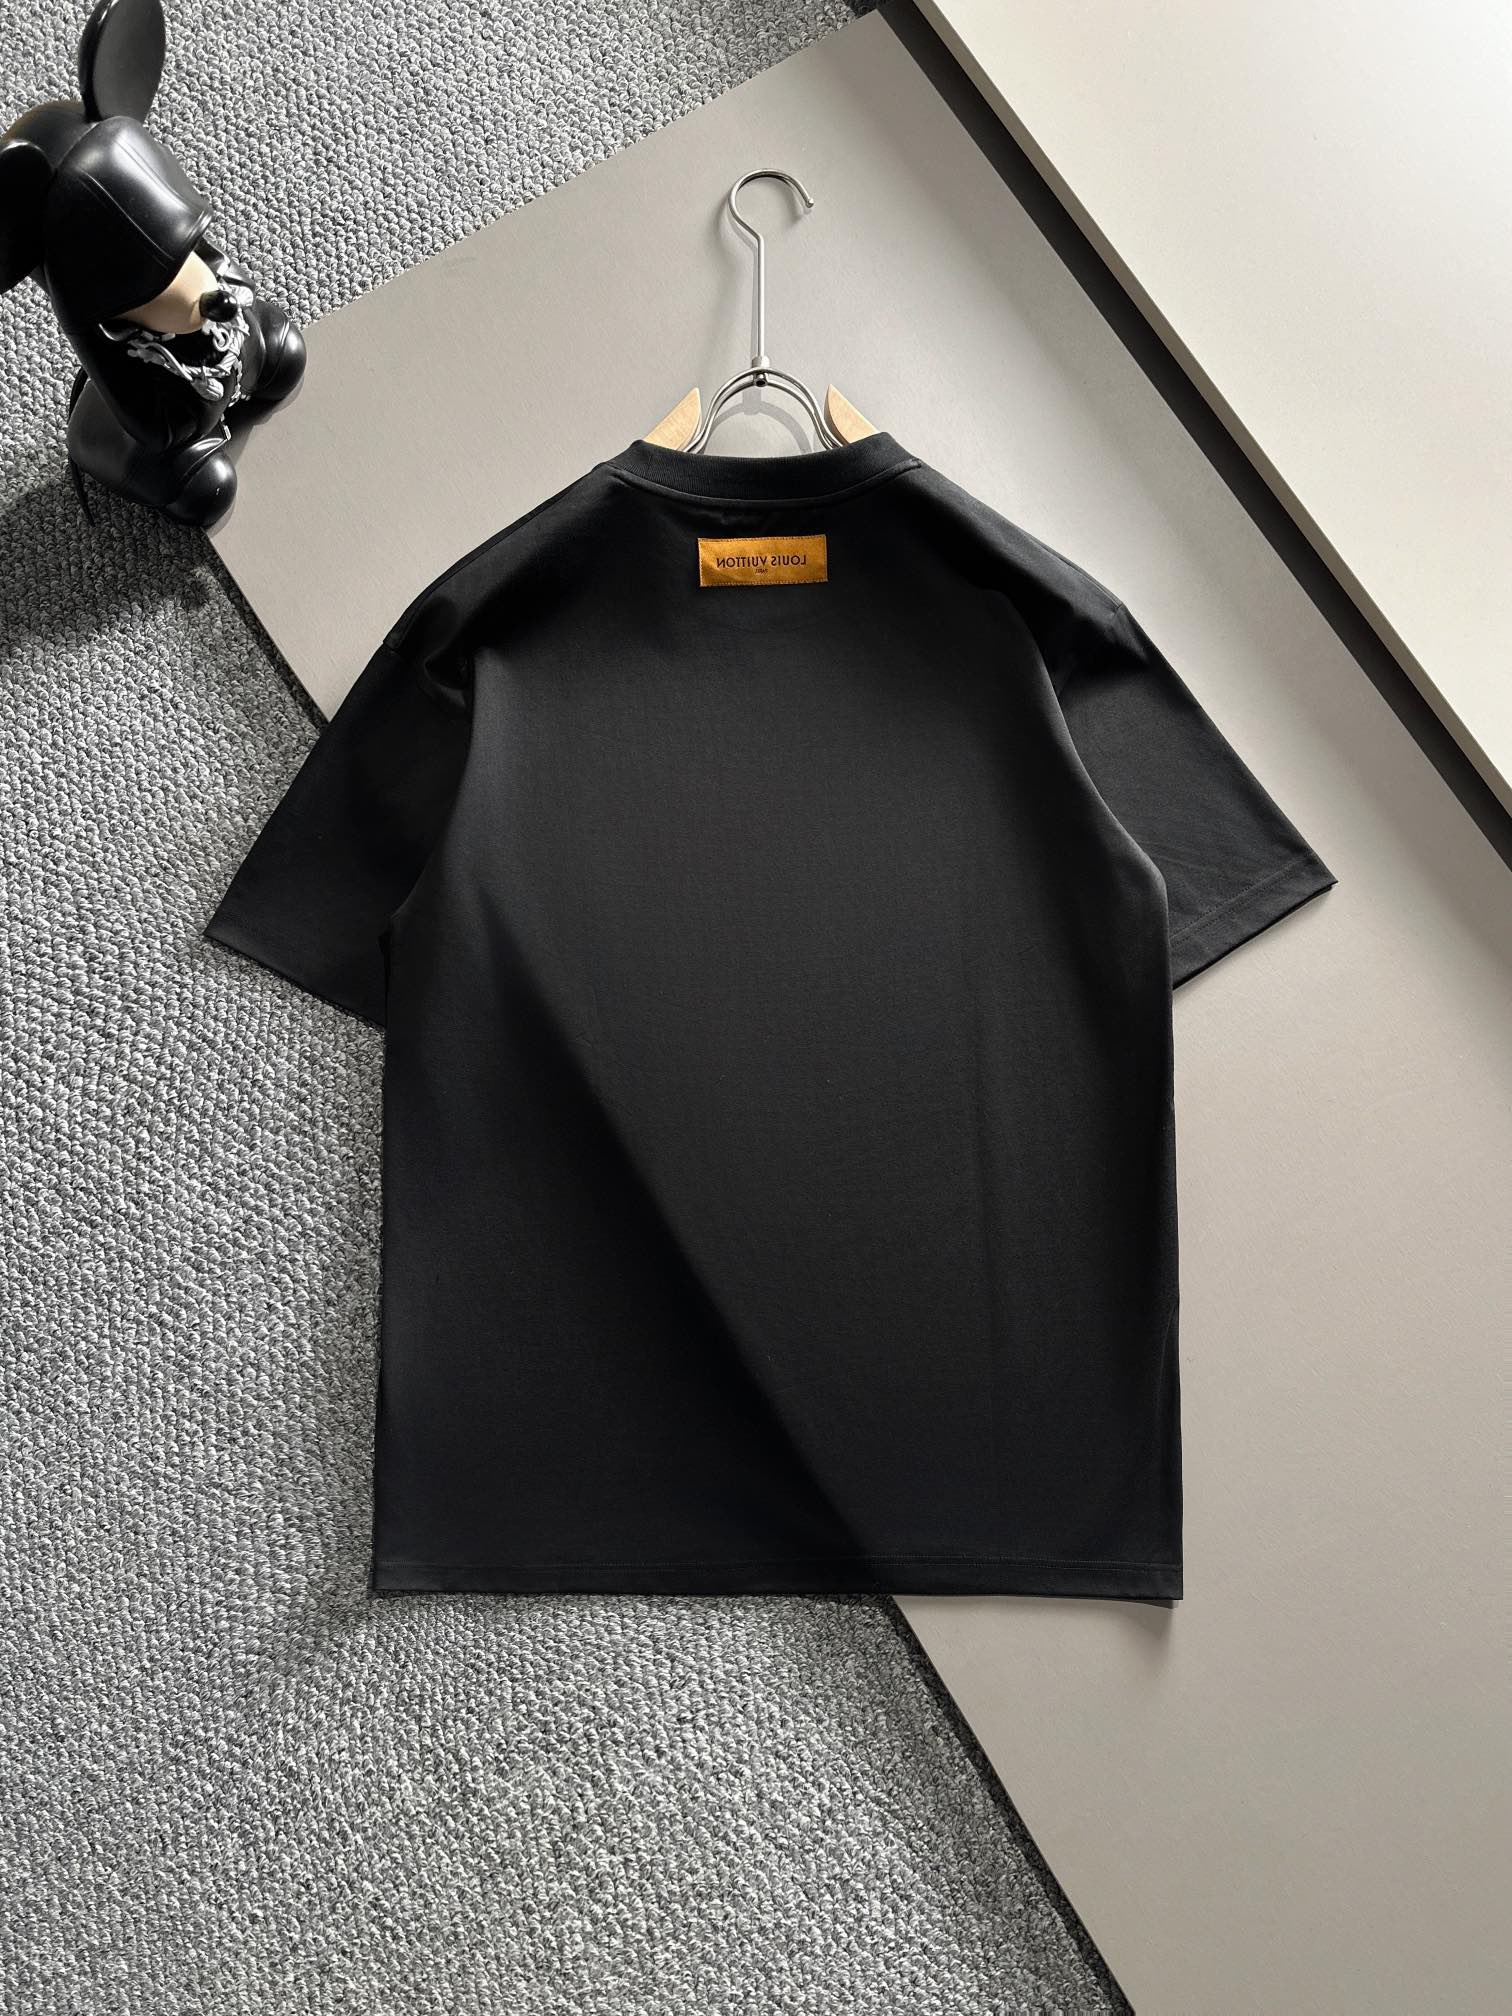 NEW 圧倒的な新作ルイヴィトンtシャツn級品 高級な着心地 贅沢な素材 フィット感_1